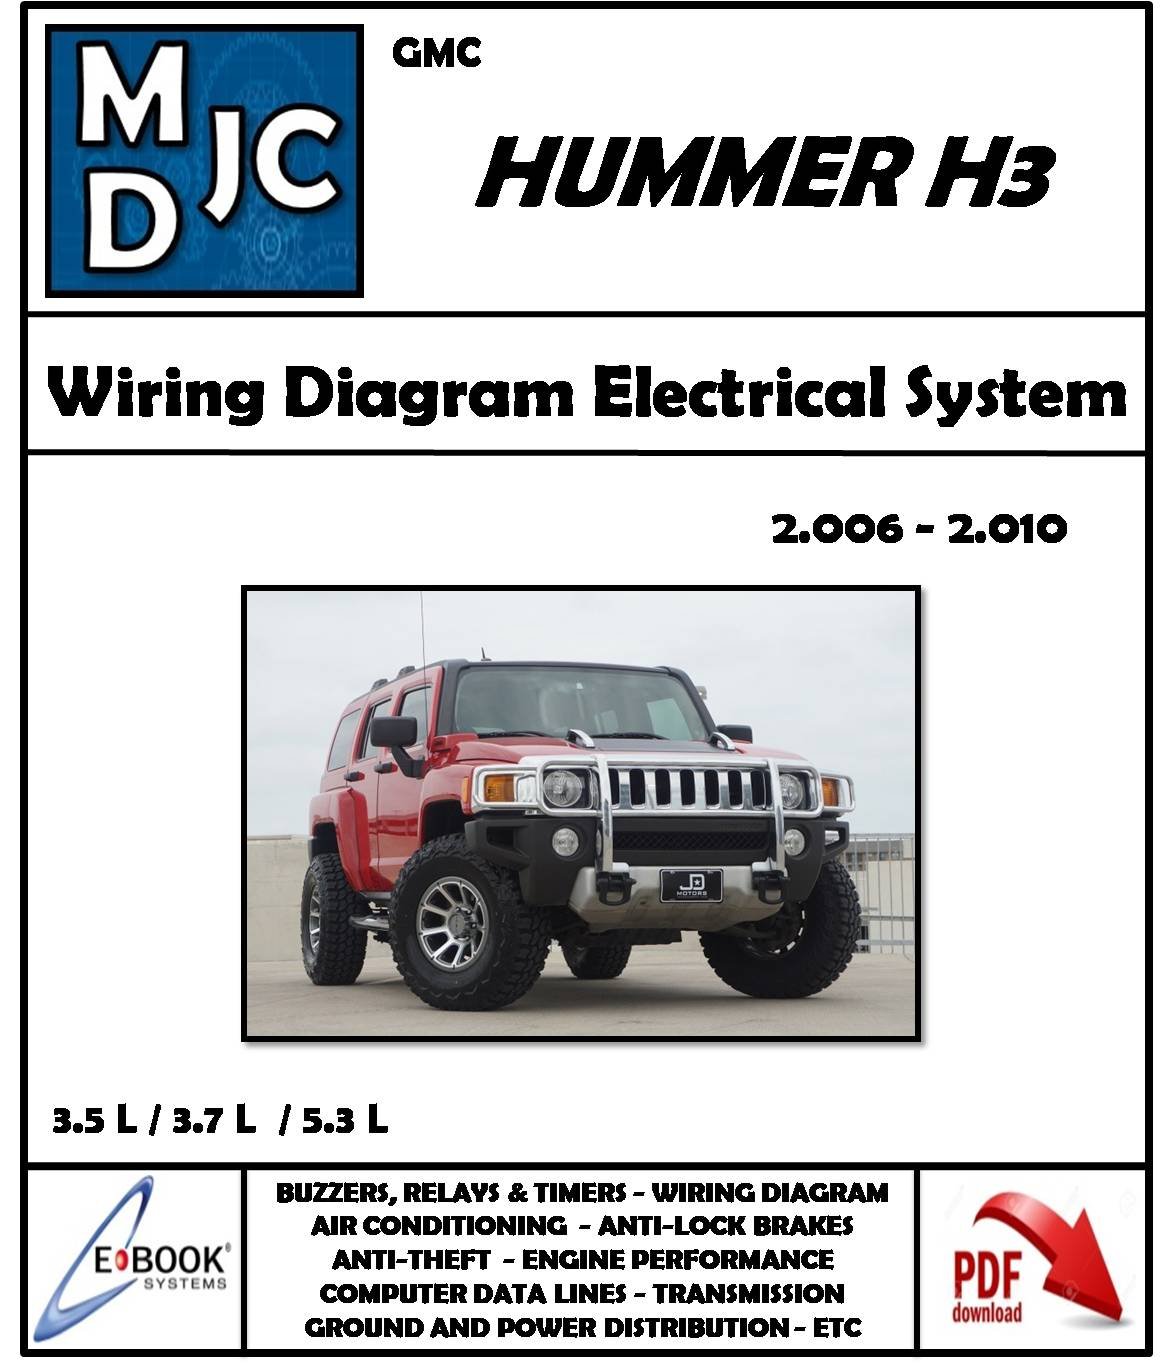 GMC Hummer H3